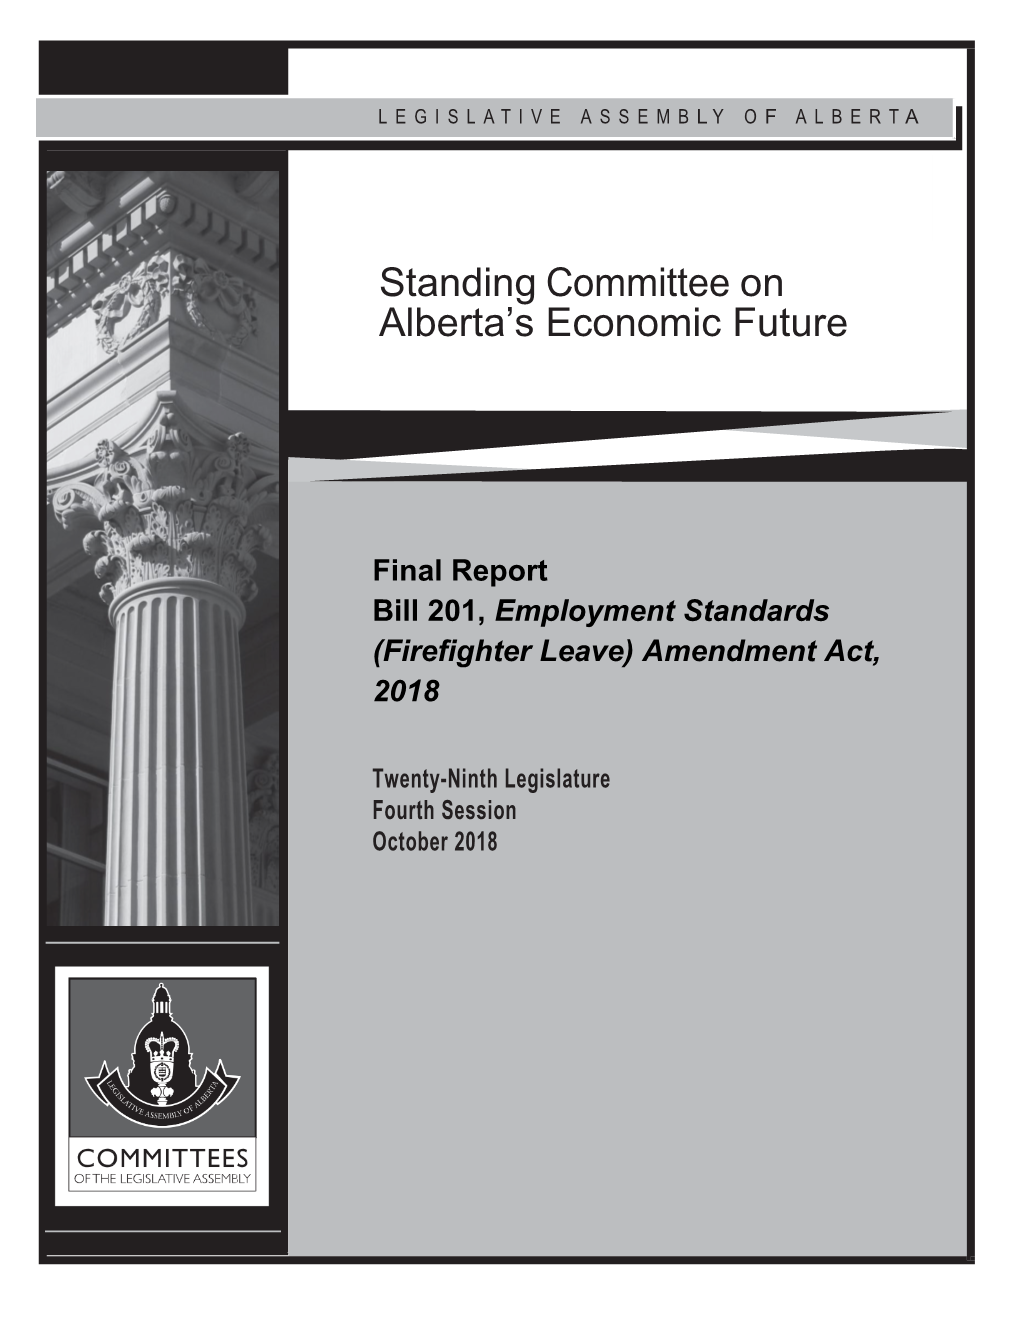 Bill 201, Employment Standards (Firefighter Leave) Amendment Act, 2018